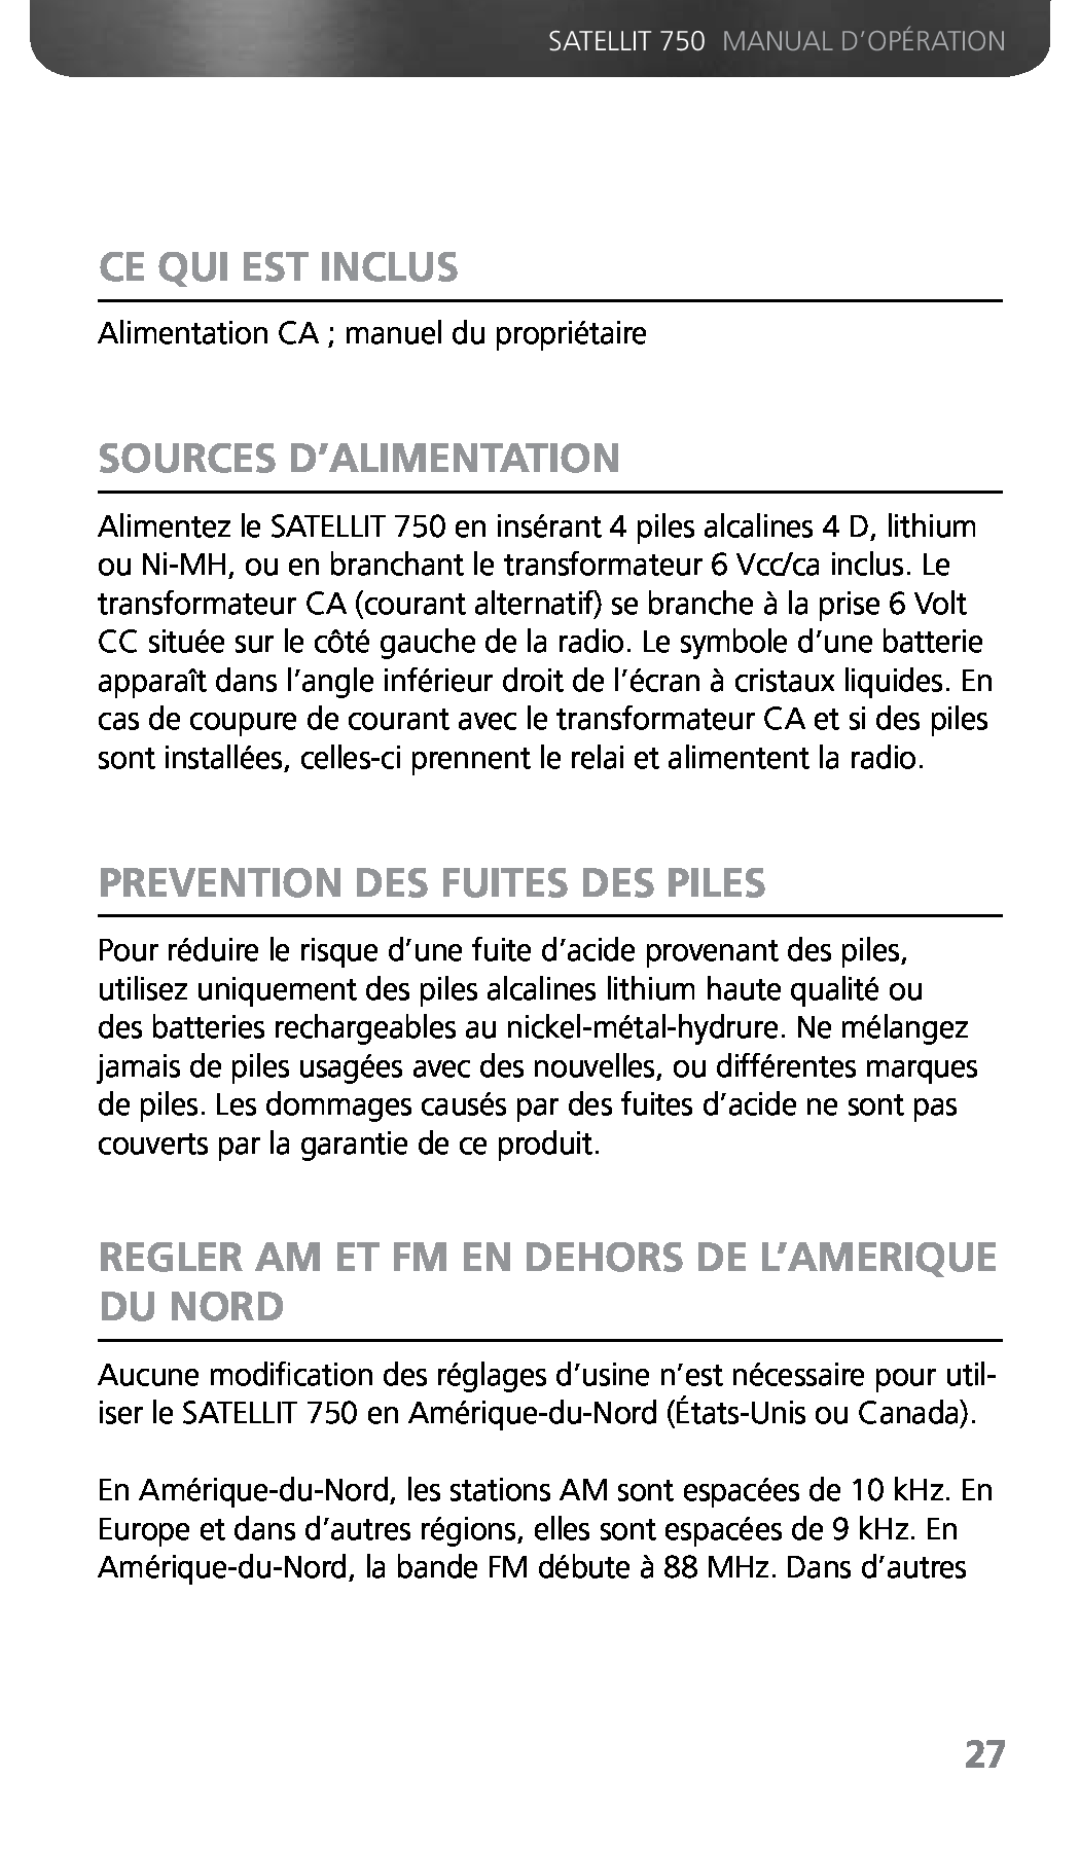 Grundig Ce Qui Est Inclus, Sources D’Alimentation, Prevention Des Fuites Des Piles, SATELLIT 750 MANUAL D’OPÉRATION 